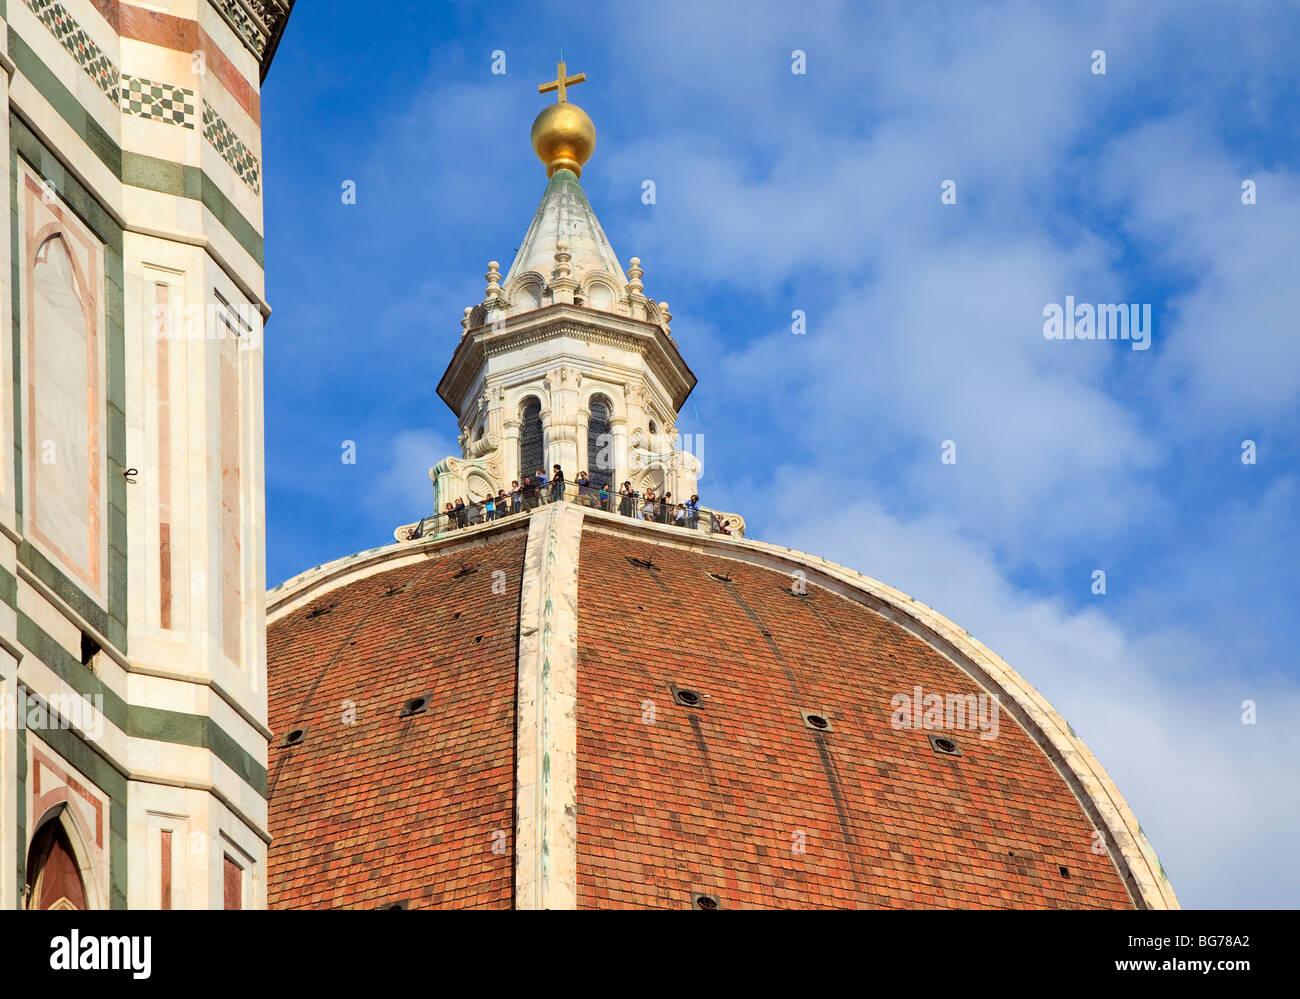 Die Kuppel der Kathedrale di Santa Maria del Fiore mit Touristen an der Spitze der Kuppel in Florenz, Toskana, Italien Stockfoto